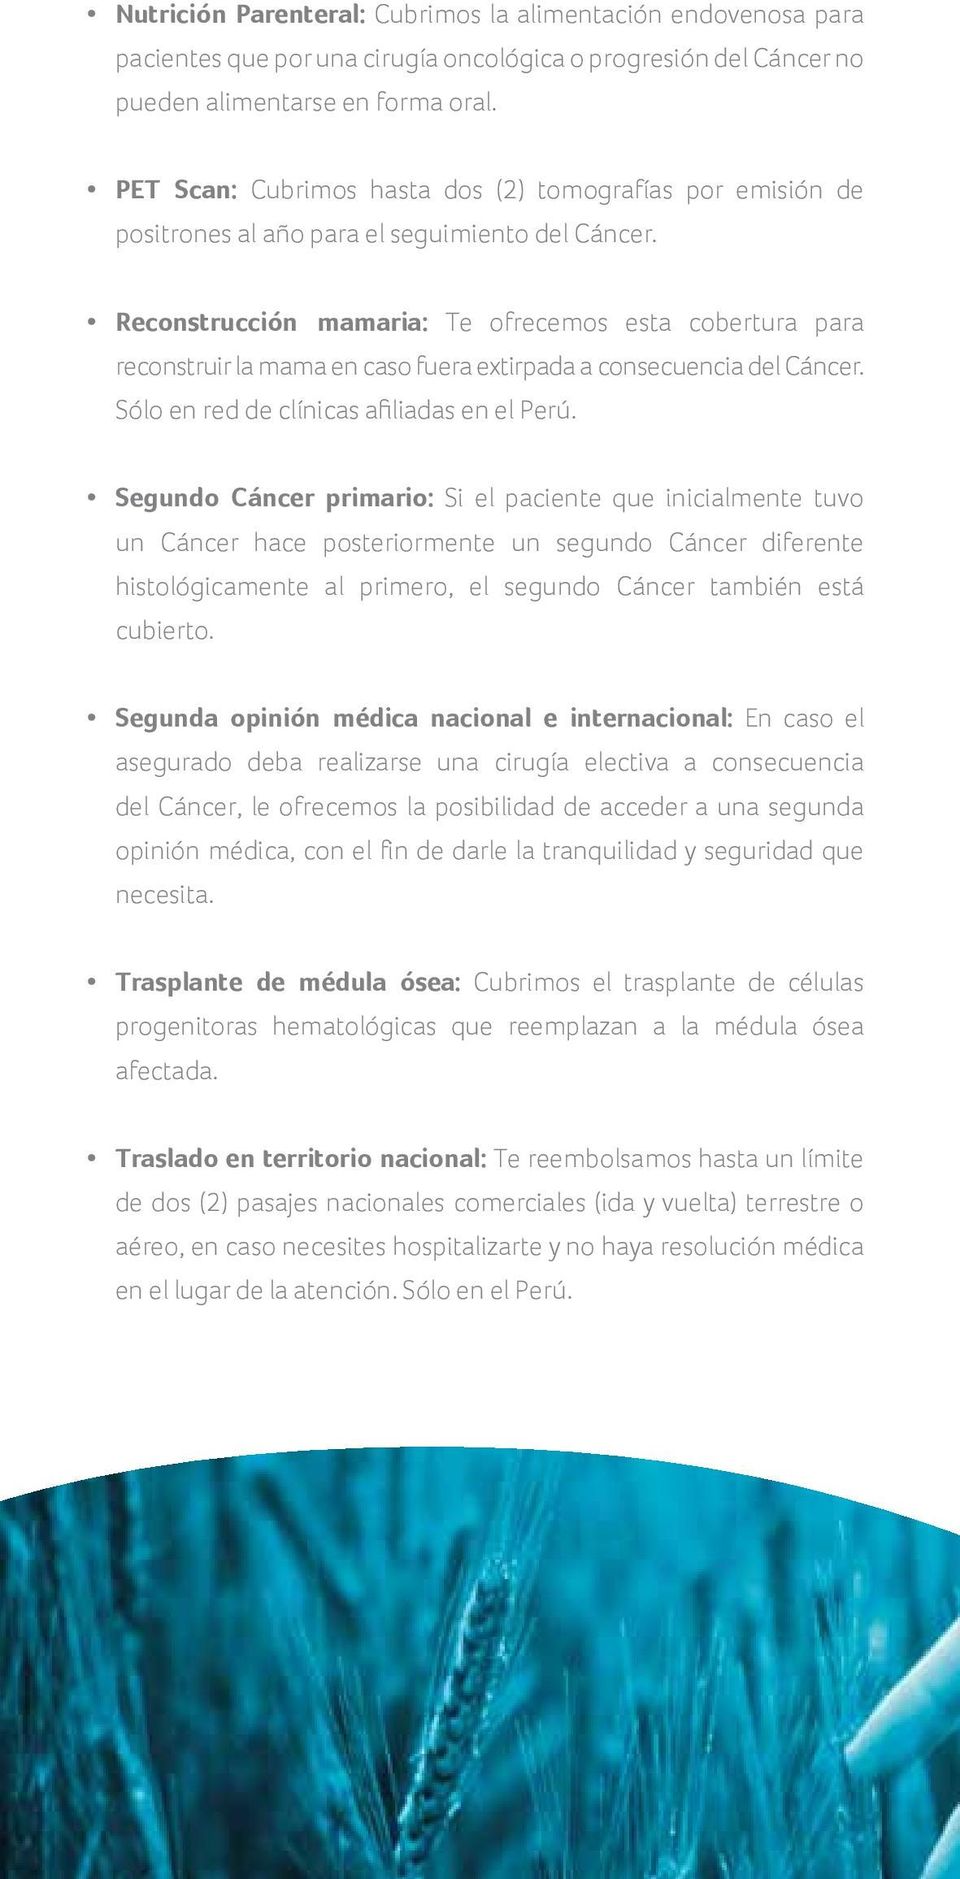 Reconstrucción mamaria: Te ofrecemos esta cobertura para reconstruir la mama en caso fuera extirpada a consecuencia del Cáncer. Sólo en red de clínicas afiliadas en el Perú.